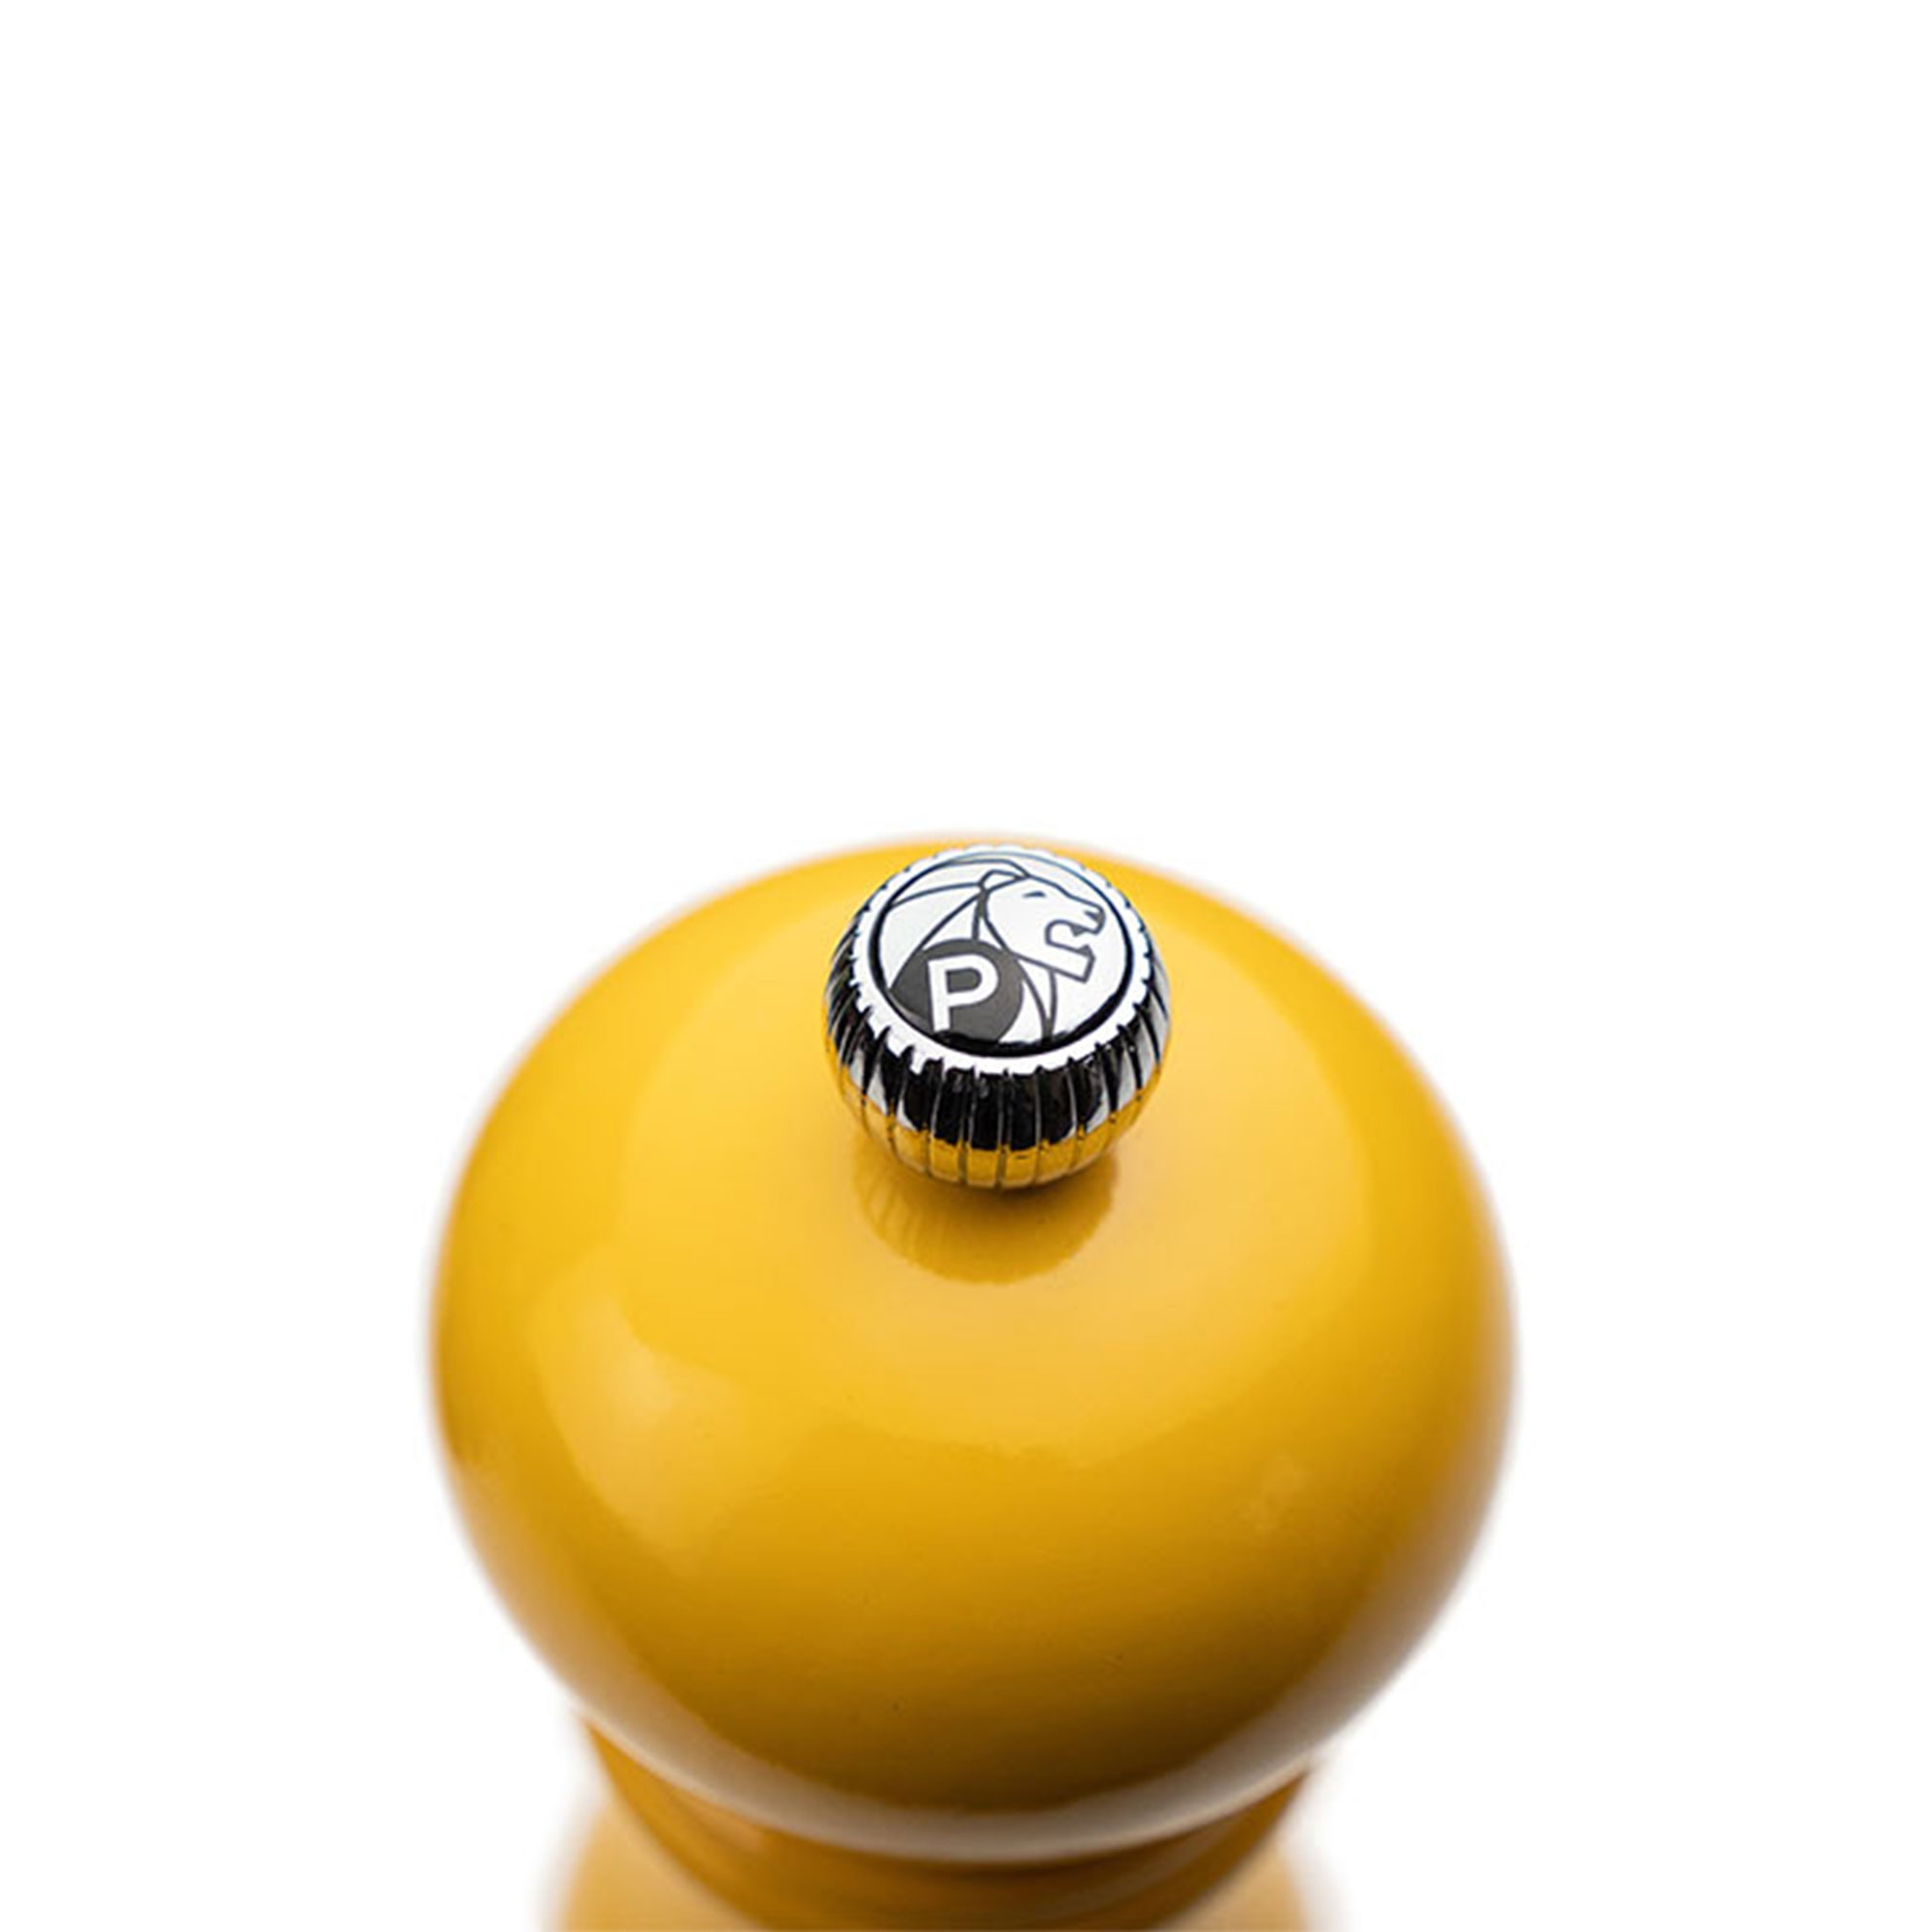 PSP Peugeot - Paris u'Select salt or pepper mill Saffron Yellow